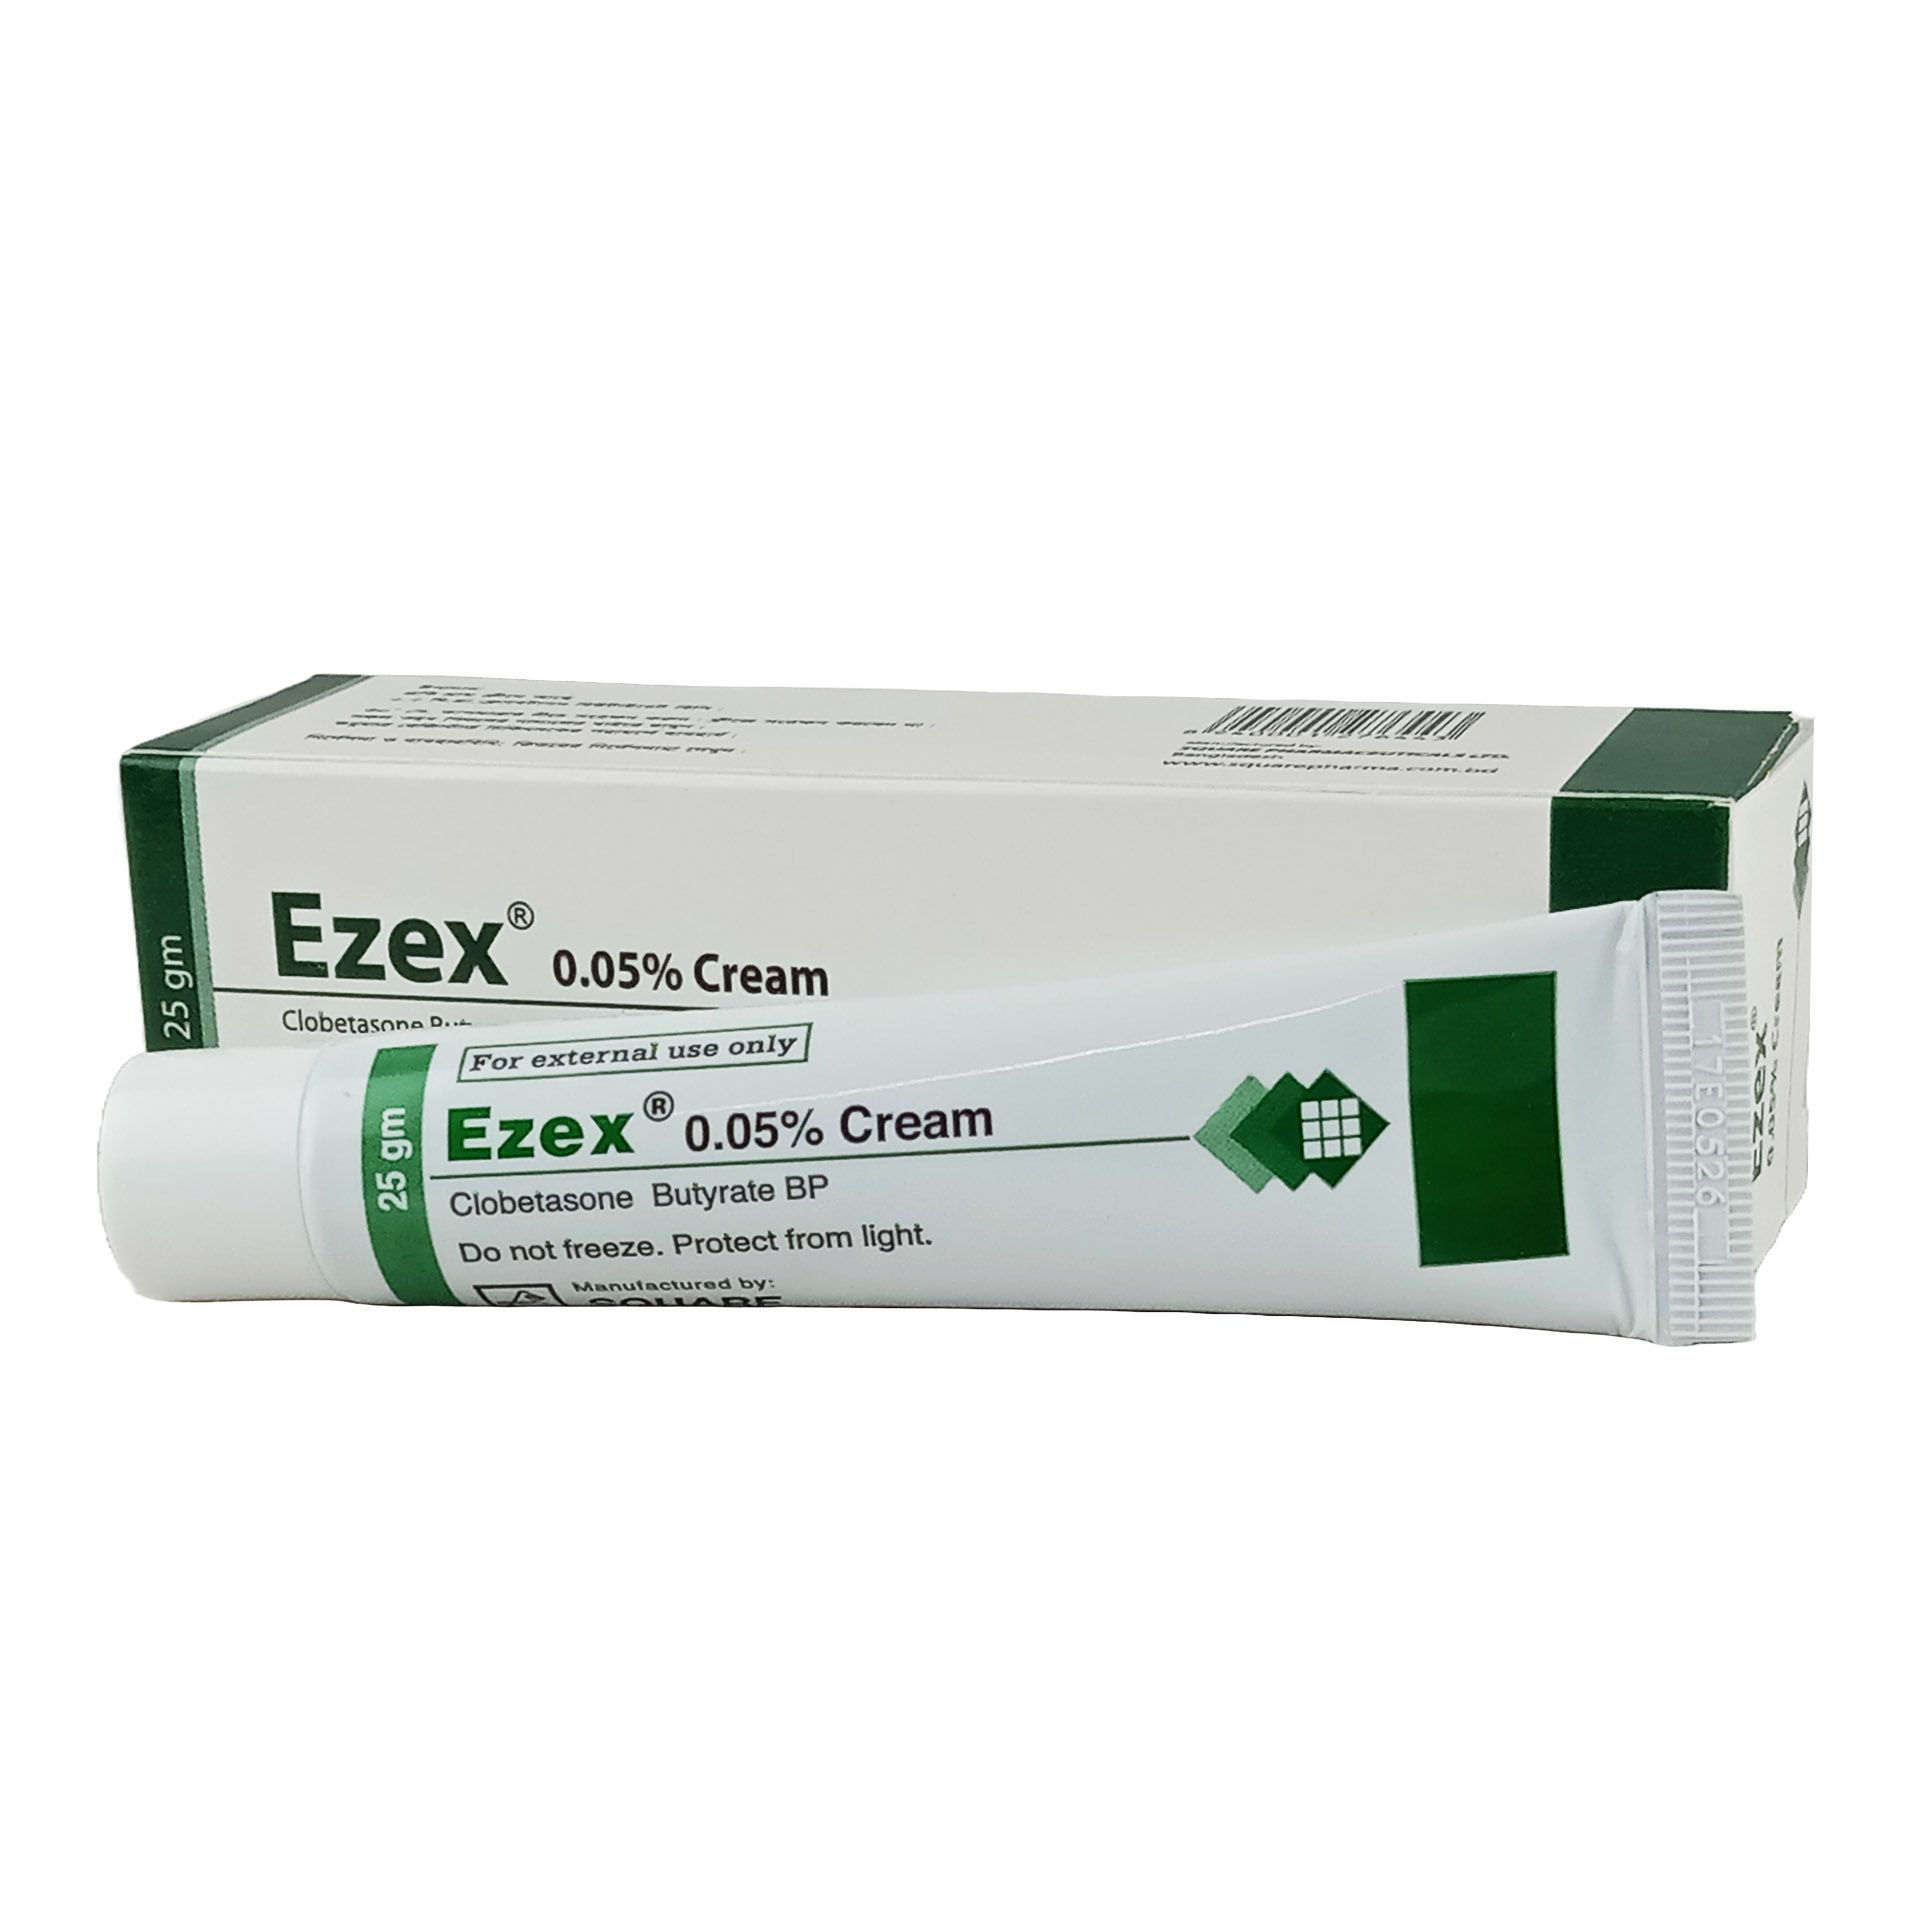 Ezex Cream 0.05% Cream